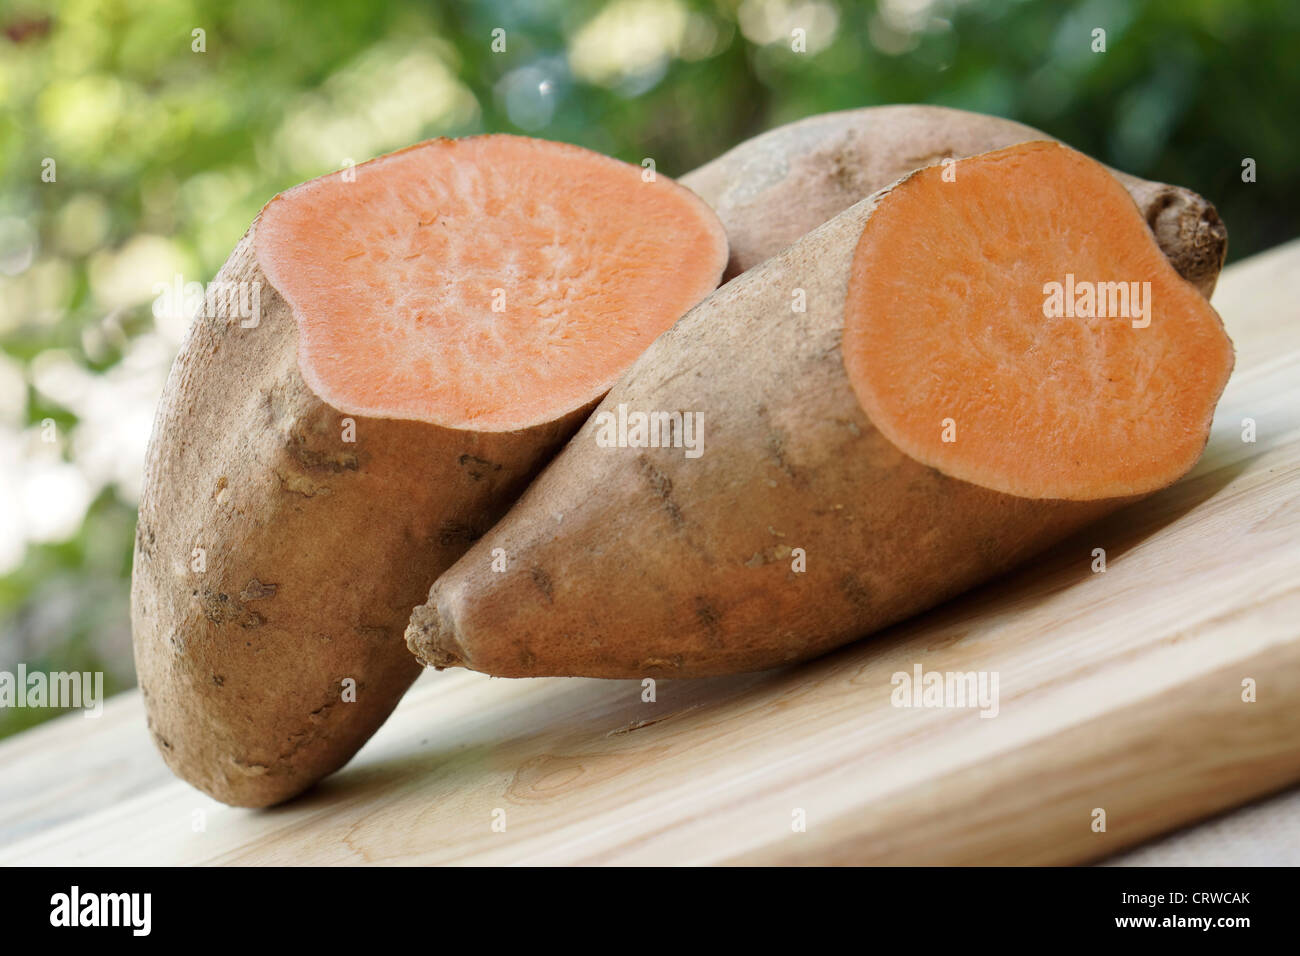 Sweet Potato, Sweet Potatoes Yam, Yams, Orange Fleshed, Orange Fleshed Yams Stock Photo